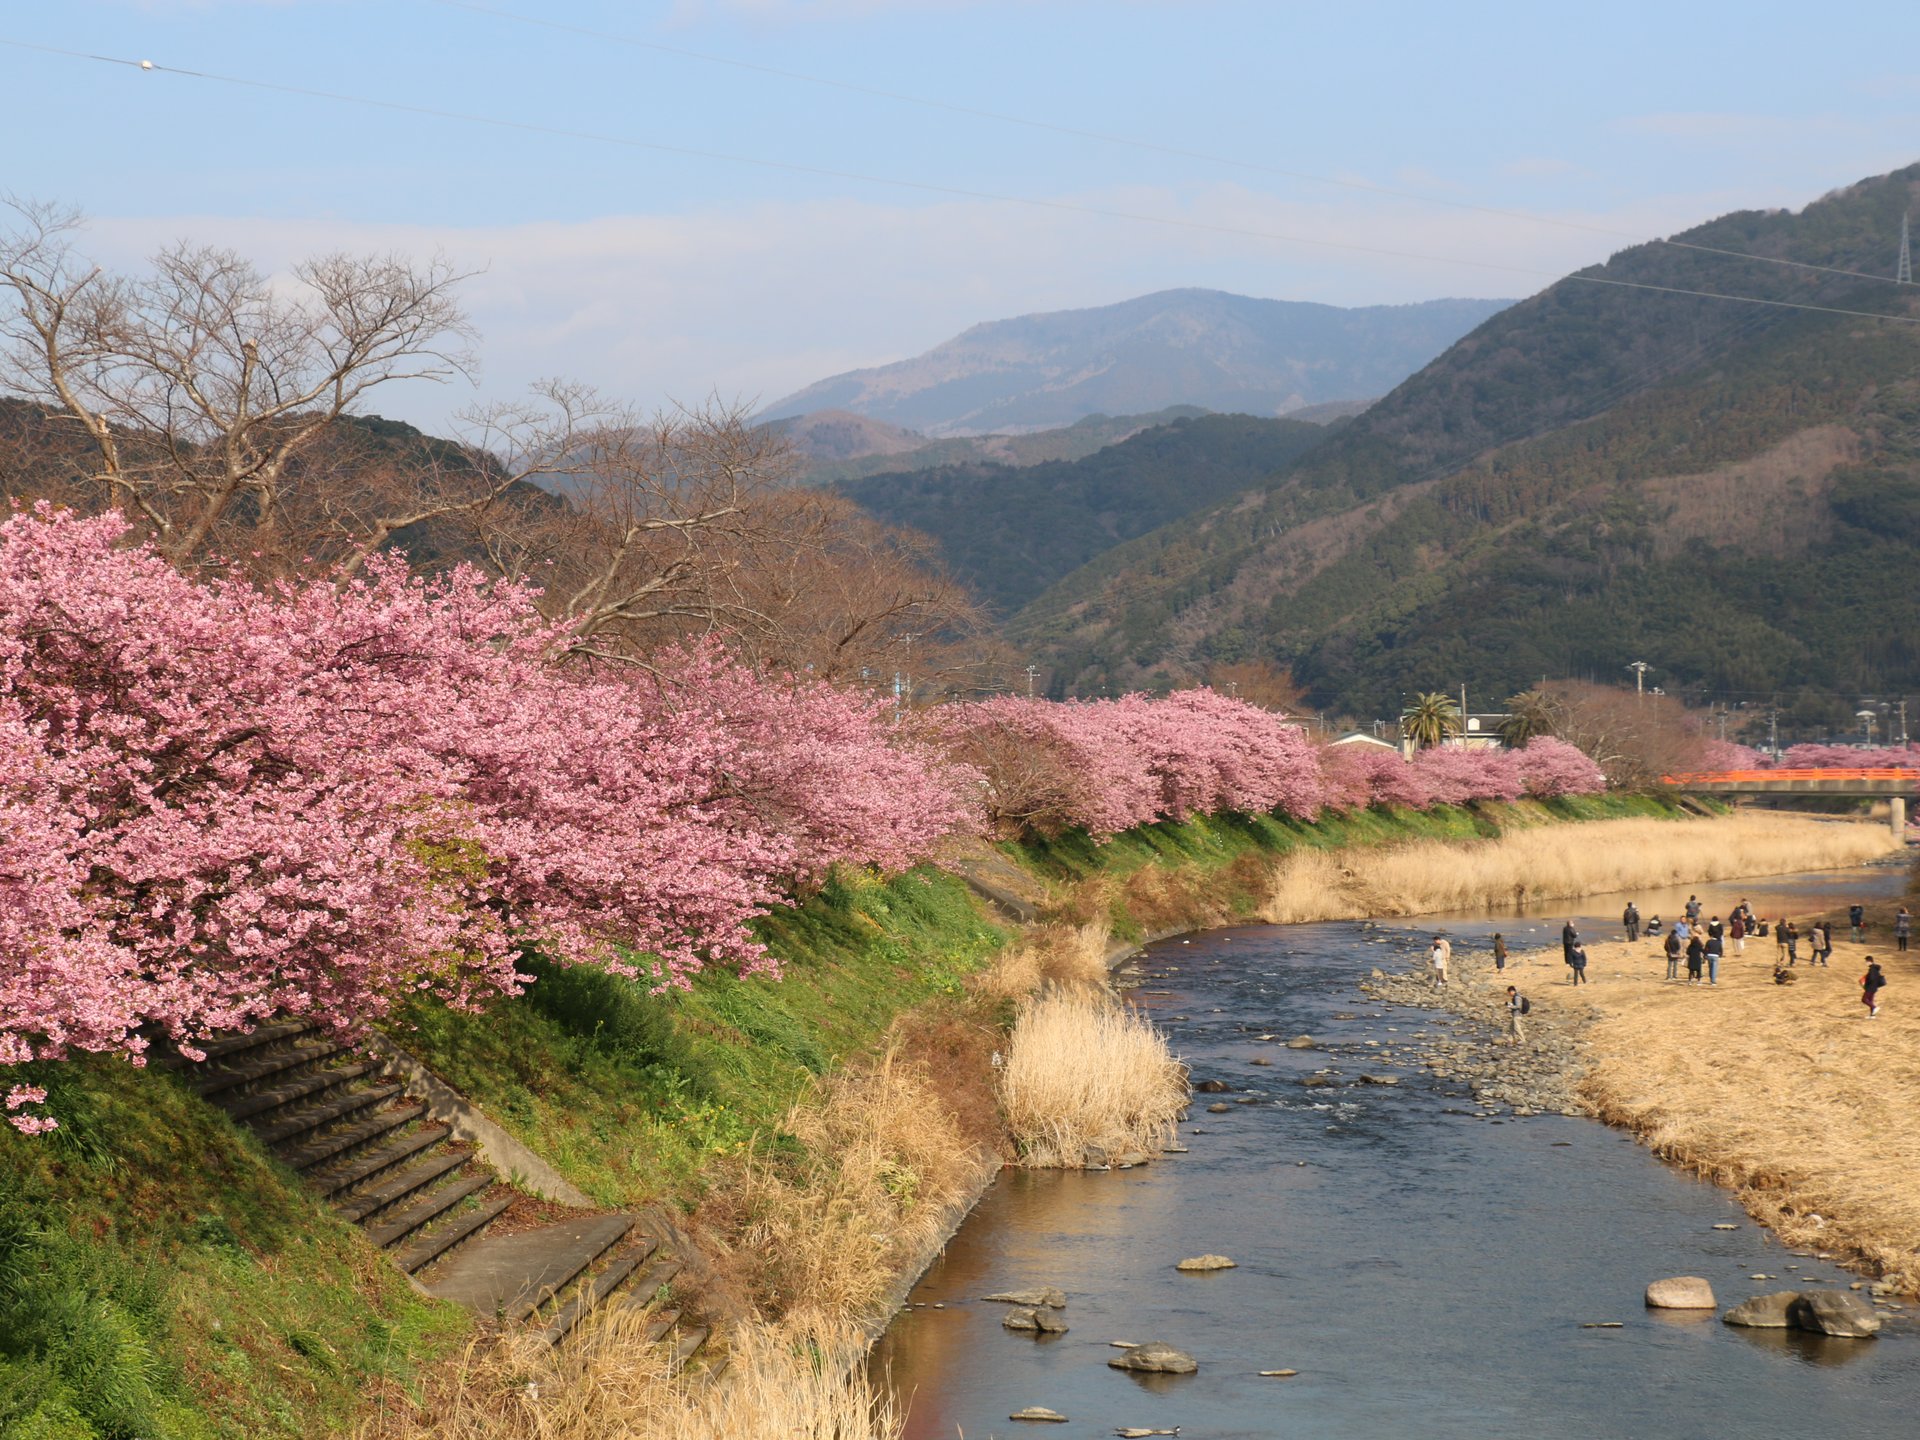 日本の春は美しい!!早春の伊豆へ花見の旅♪1泊2日【備忘録】